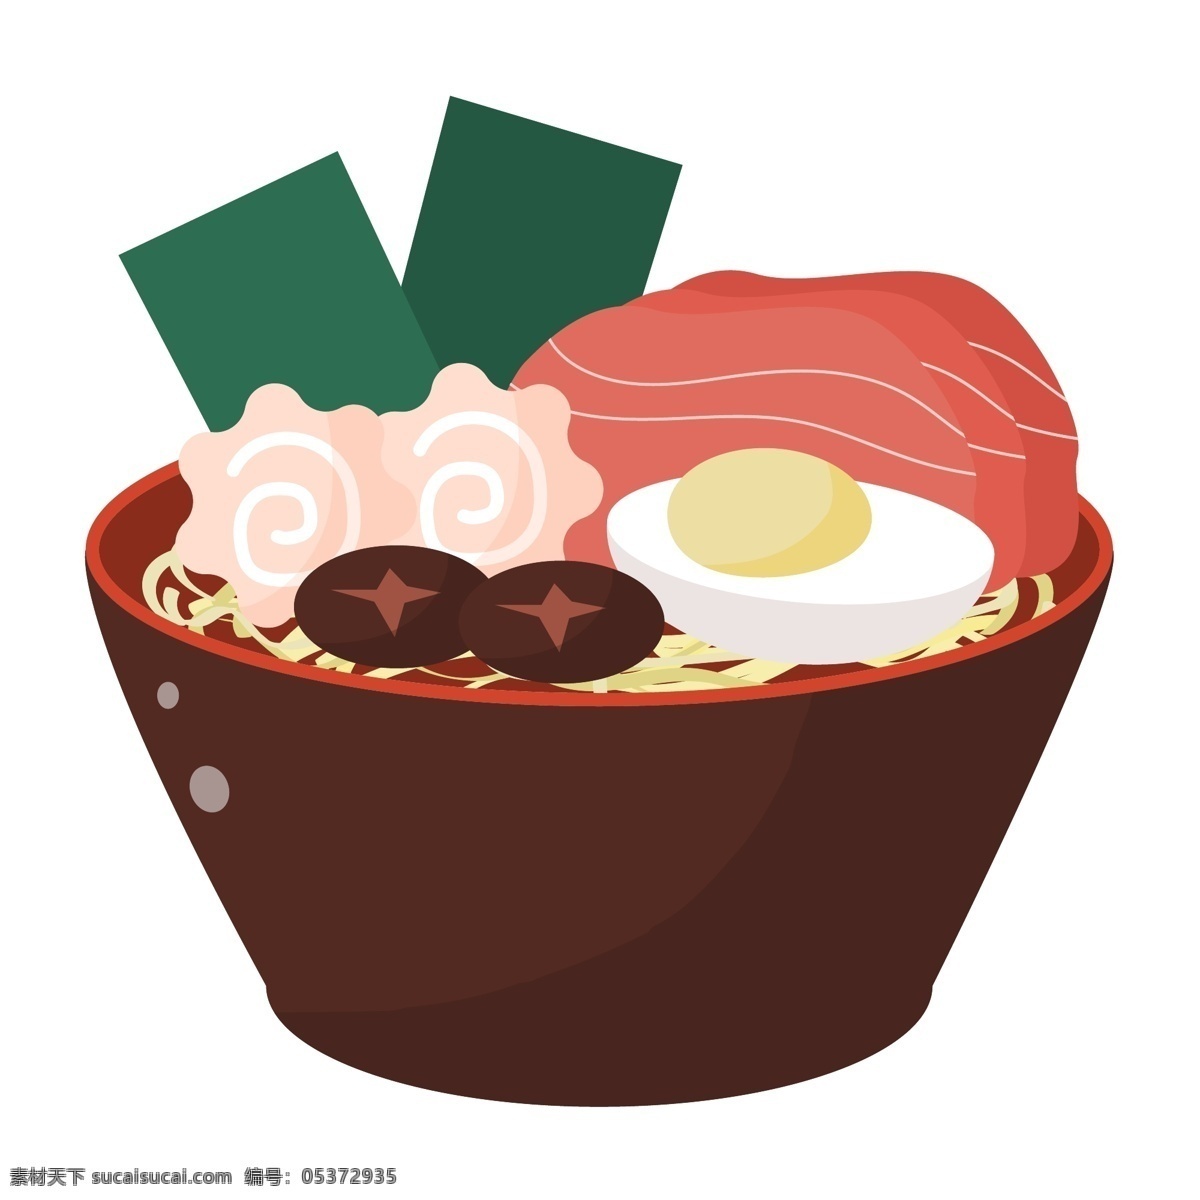 美味 日式 拉面 插画 美味的拉面 日式拉面插画 精致的碗具 卡通食物插画 日式拉面